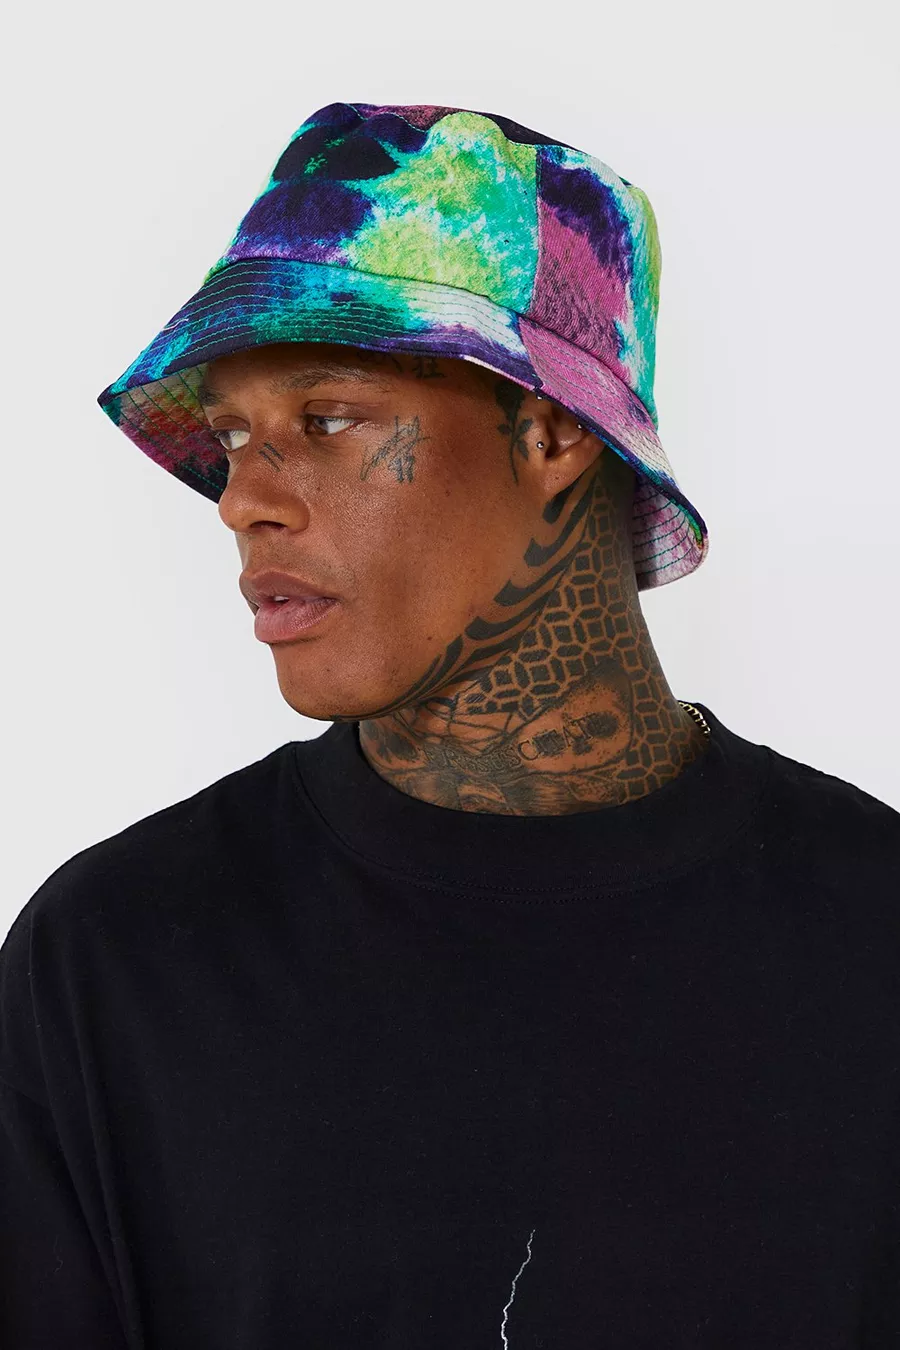 Bucket Hats' Tie-dye style